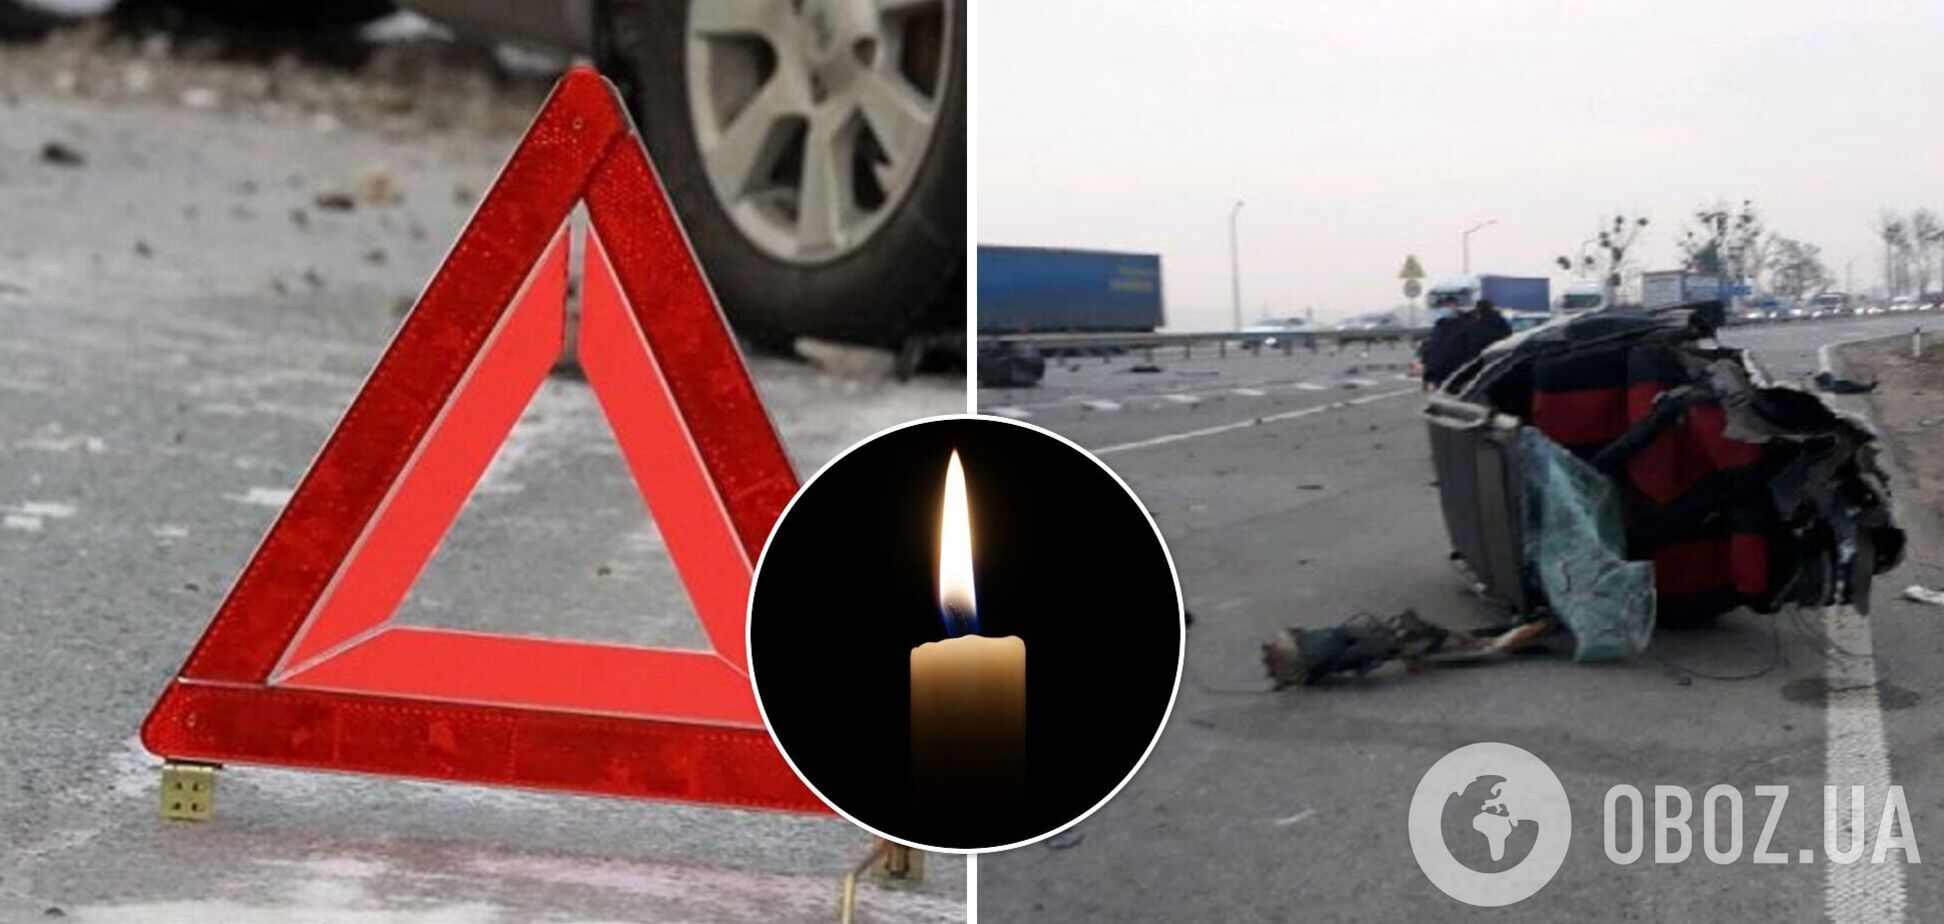 На Львовщине в ДТП погибла 12-летняя девочка, еще двое людей пострадали. Фото и видео